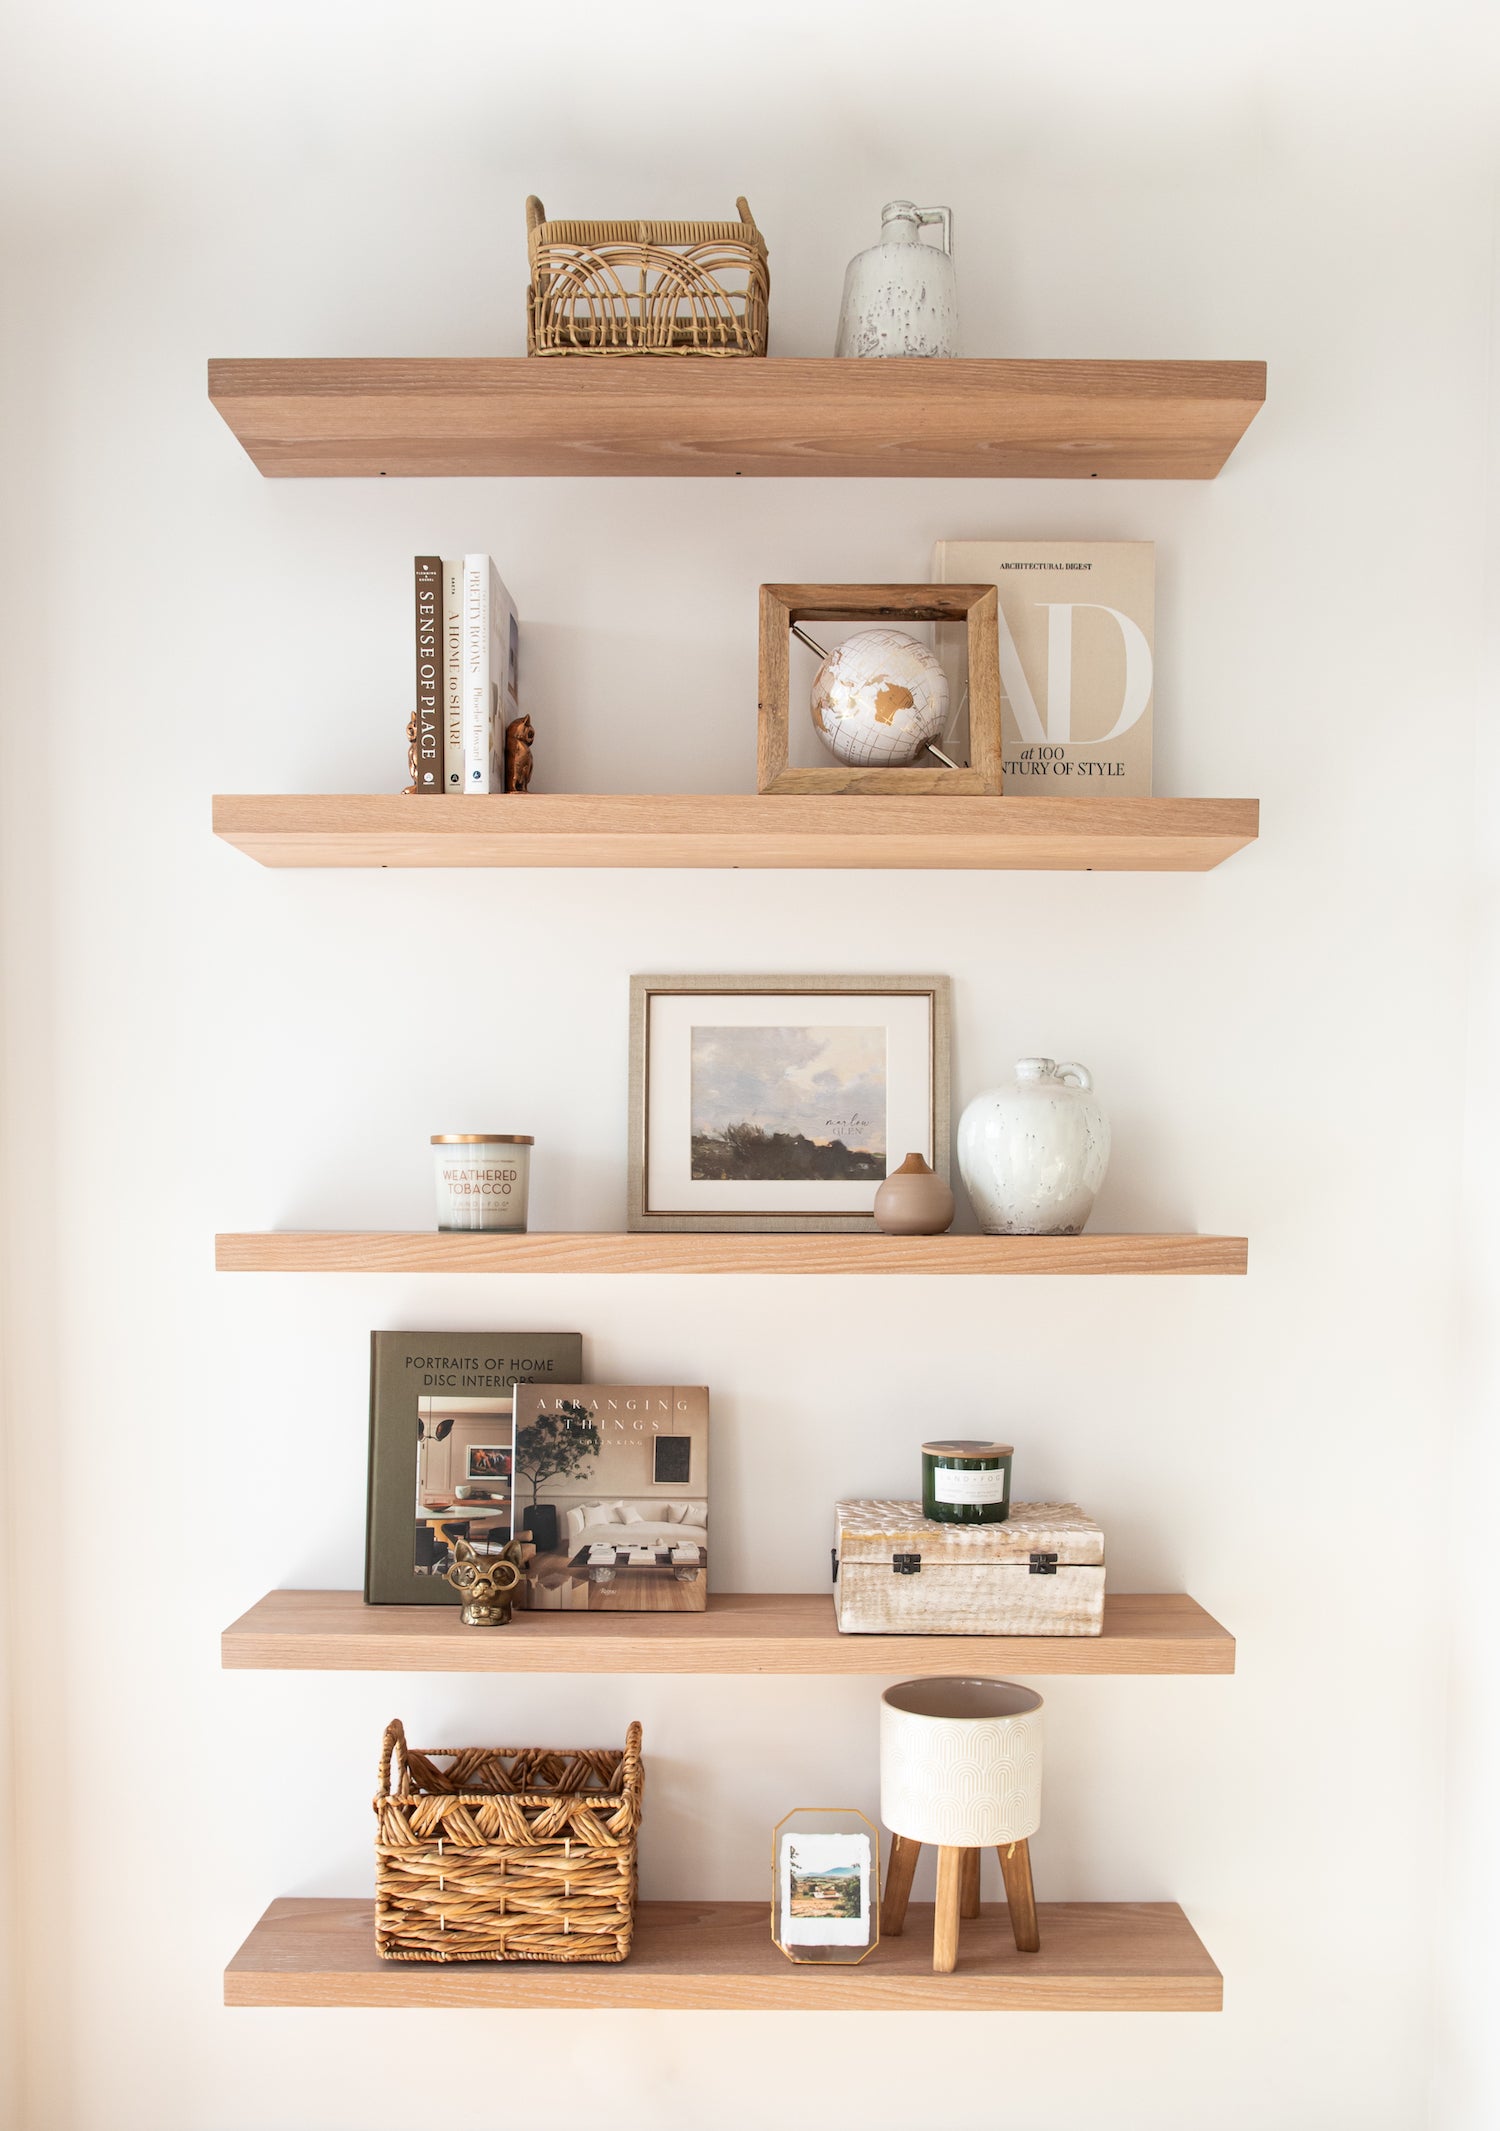 Solid Wood Floating Shelves